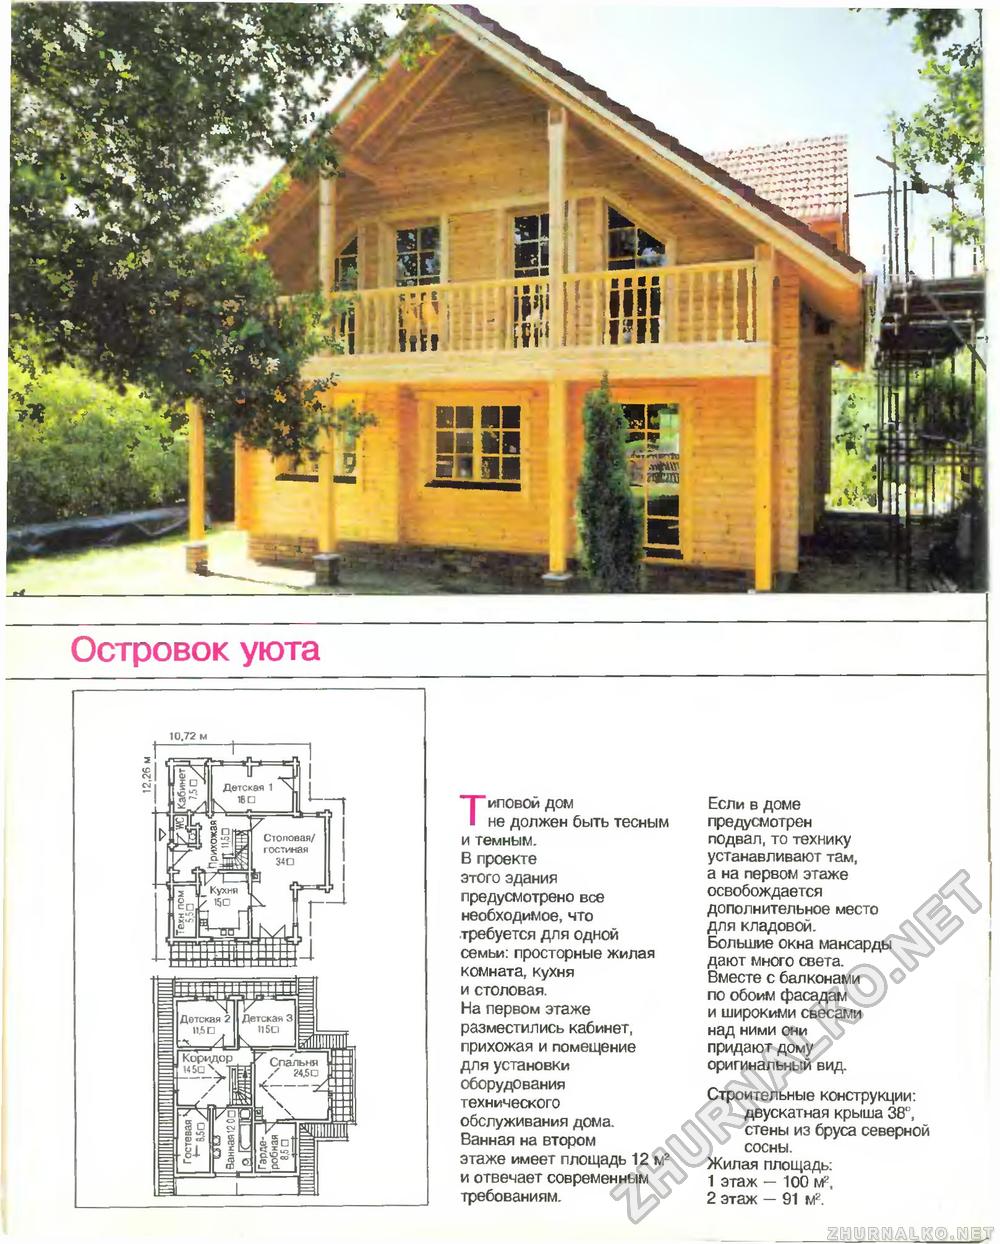 Дом 1997-05, страница 6